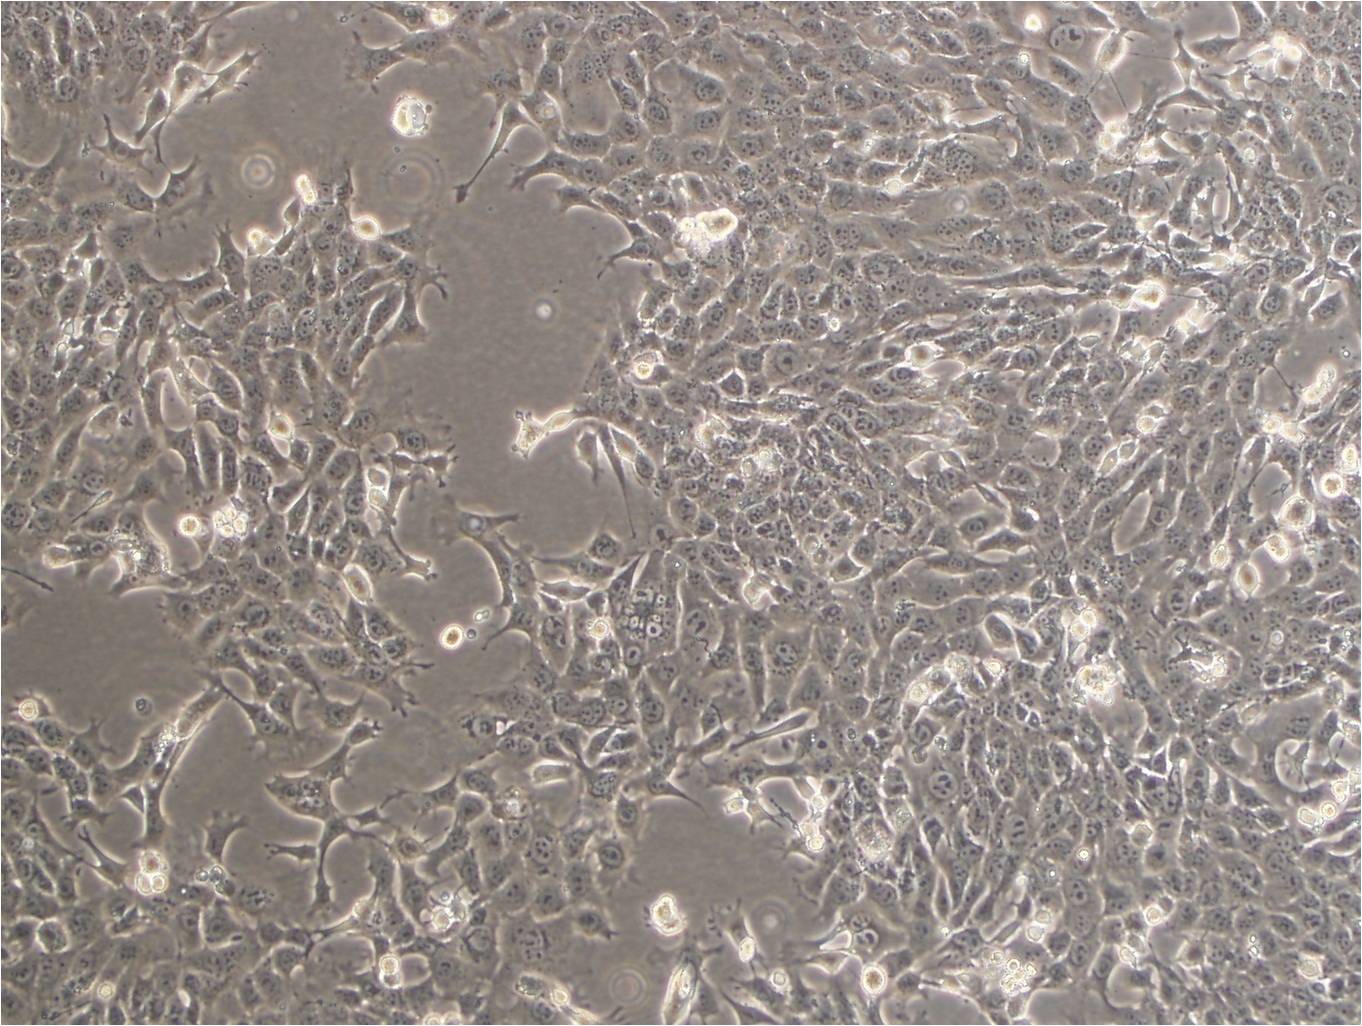 NCI-H2198 epithelioid cells人肺癌细胞系